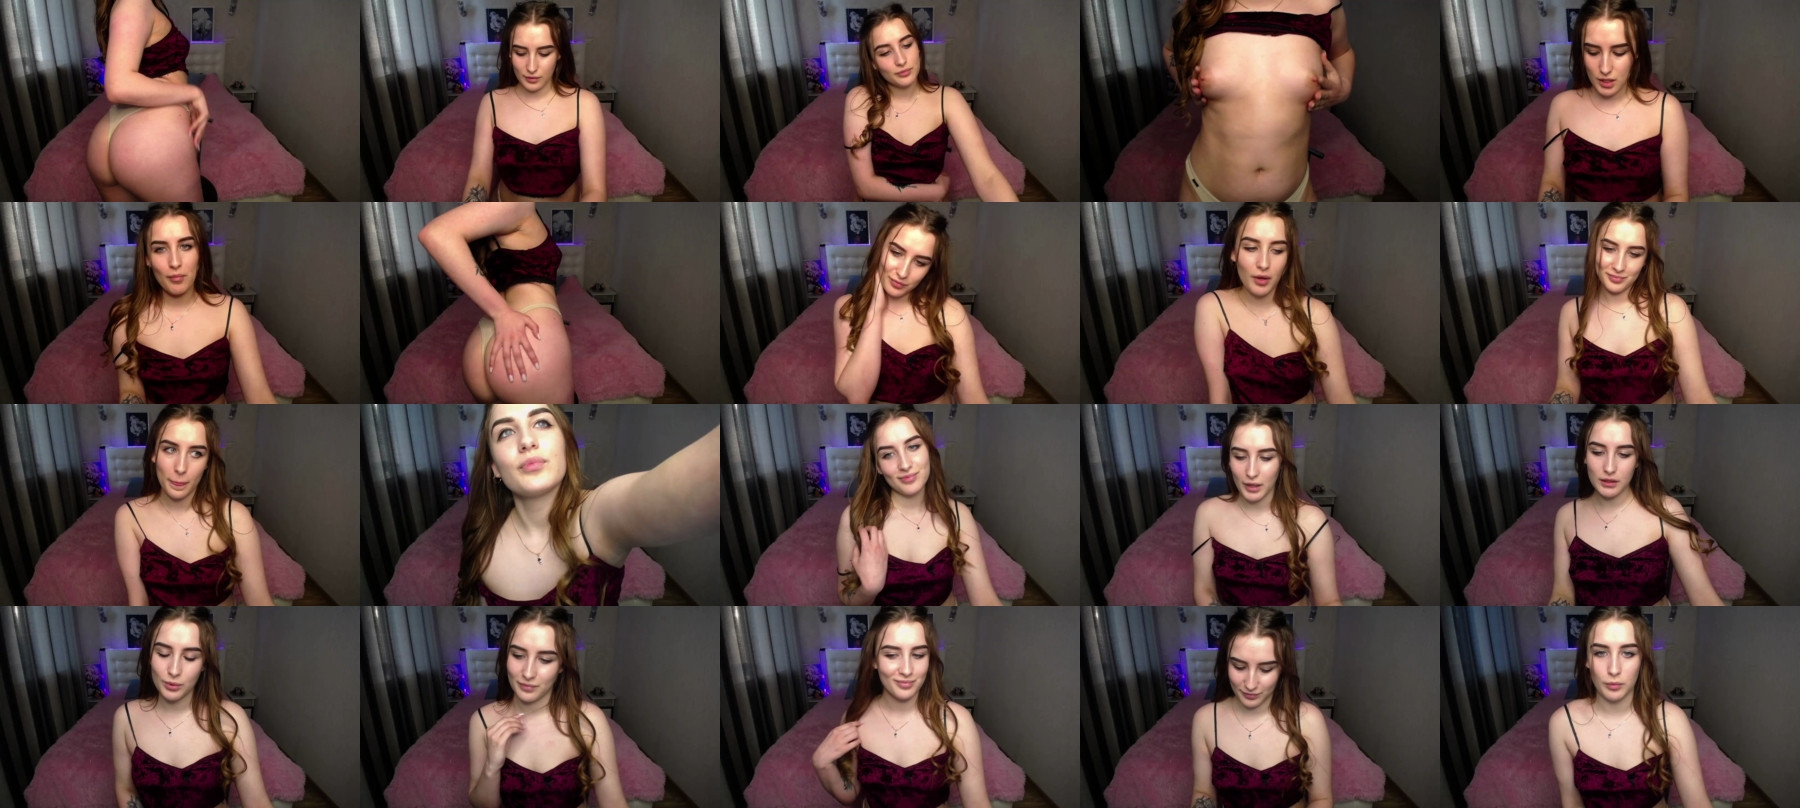 Emma_Jordan  17-04-2021 Trans Porn